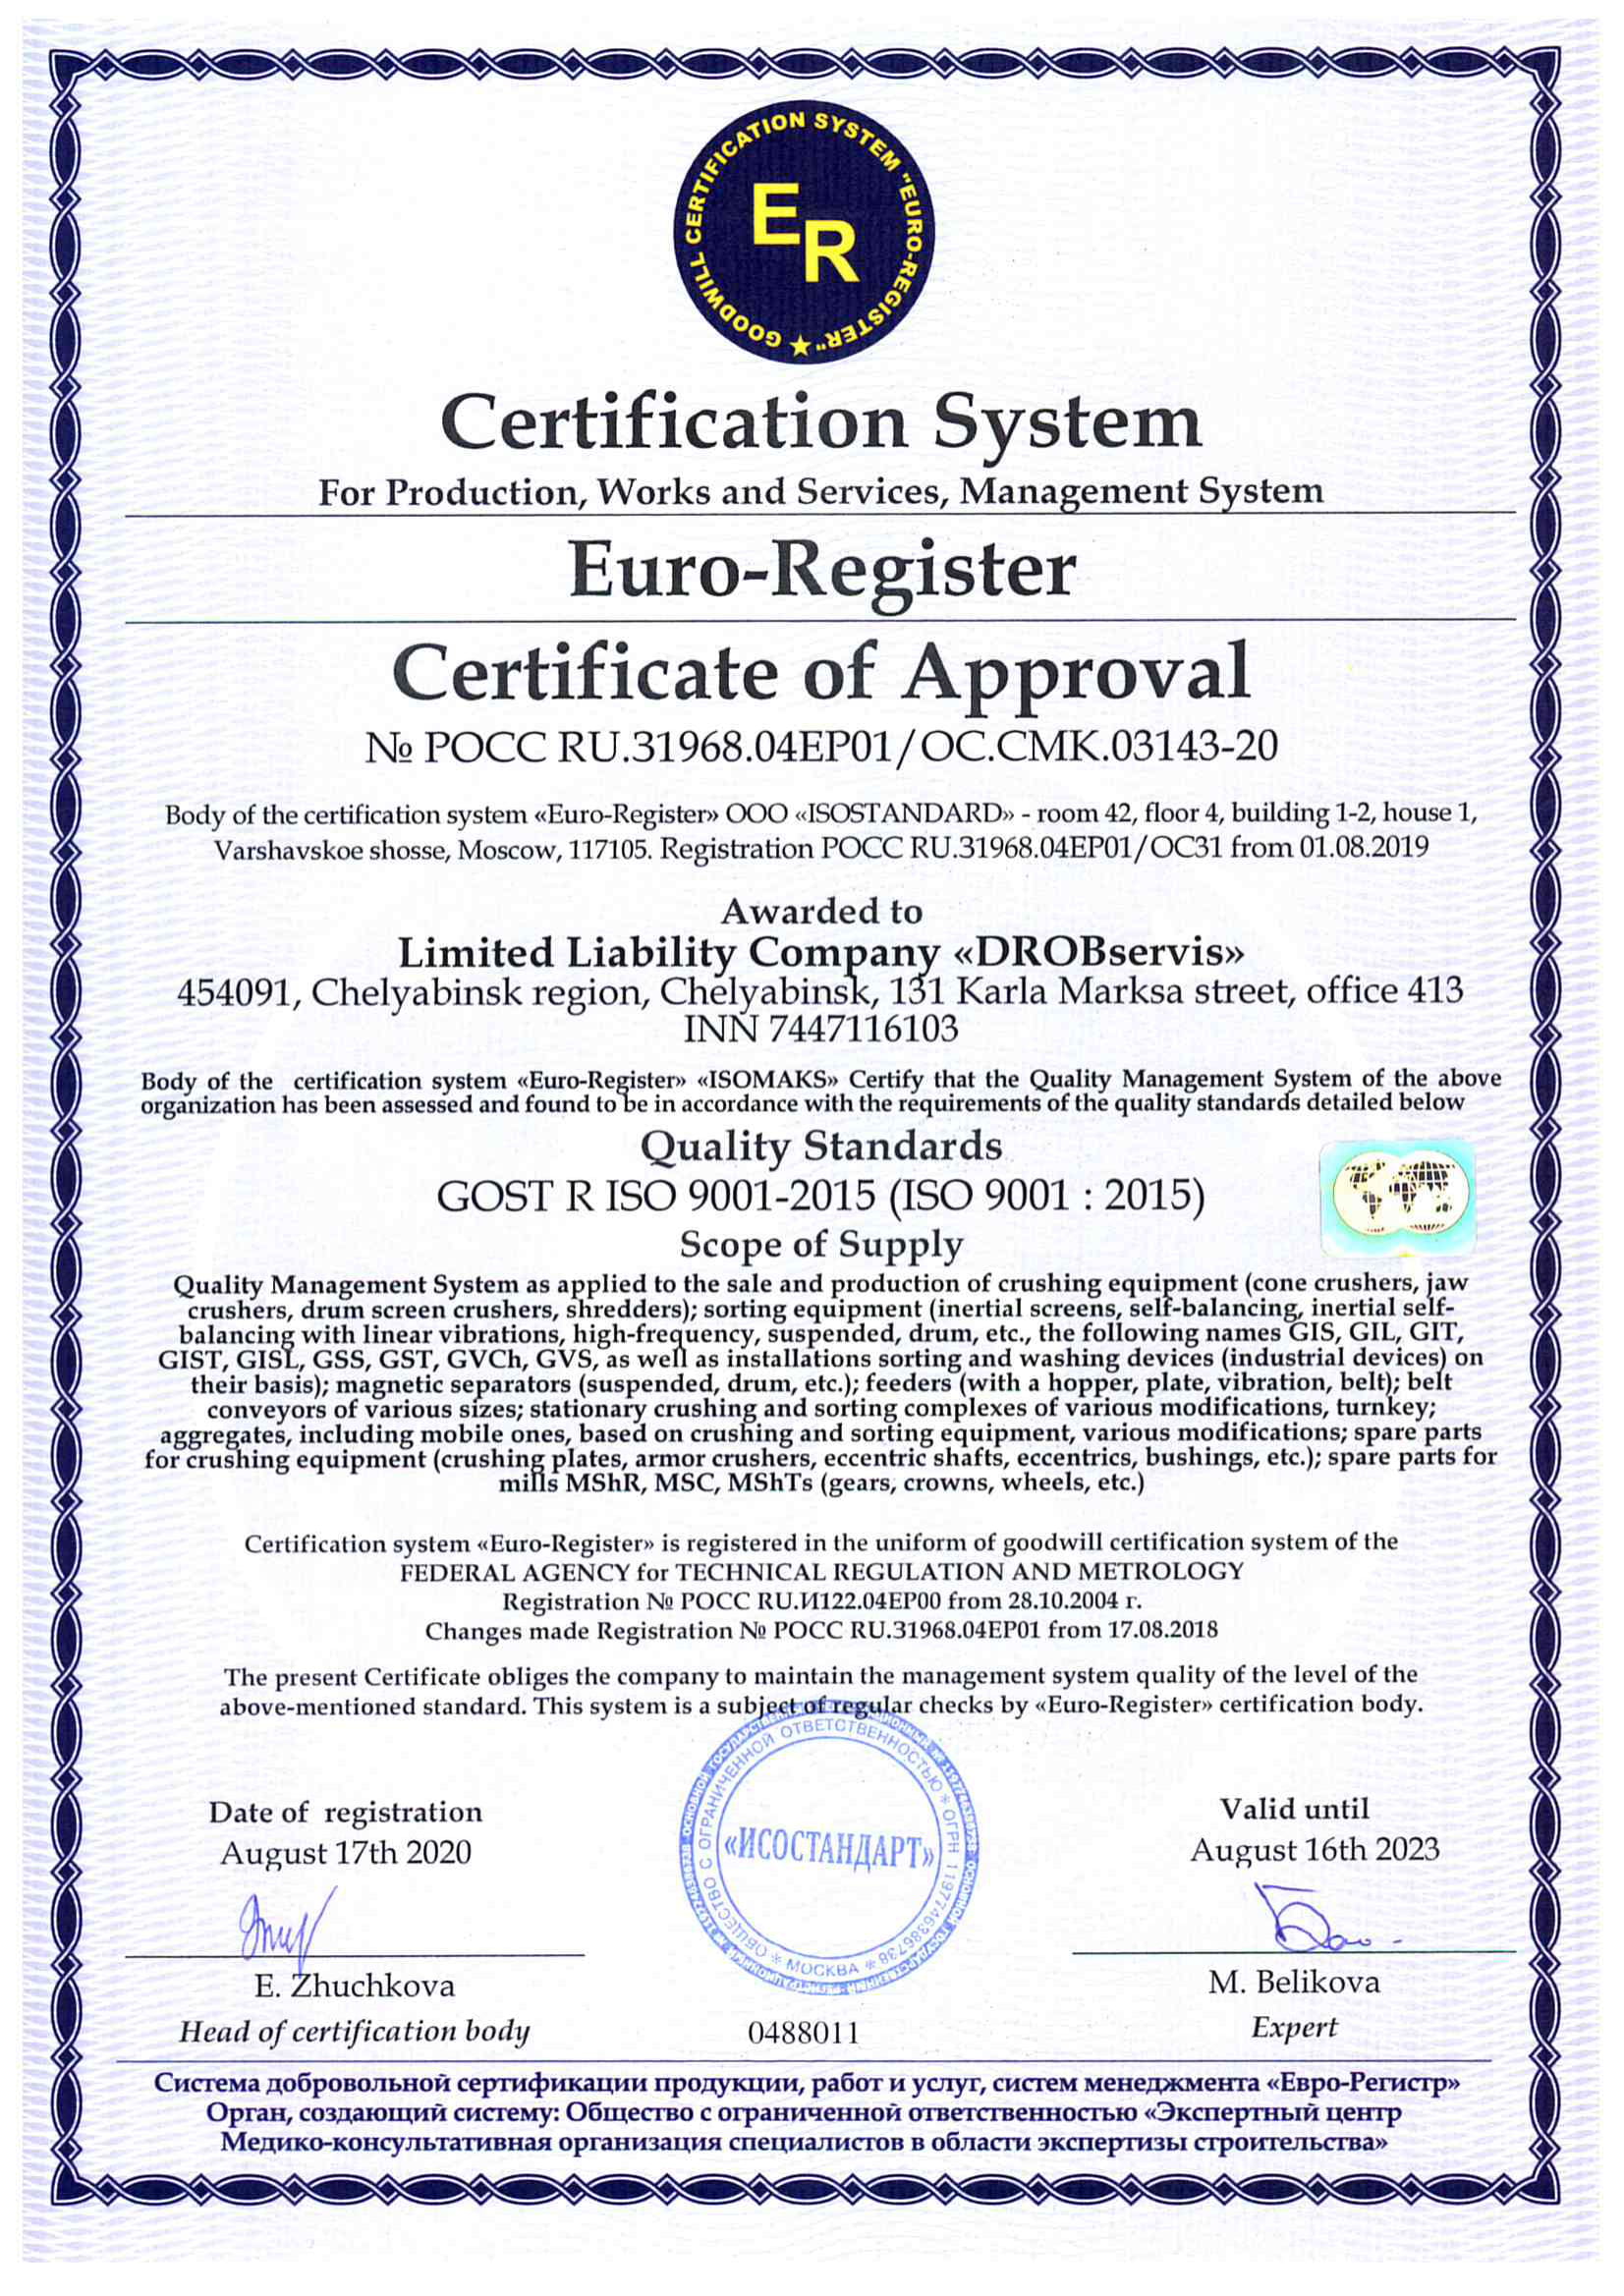 Компания ДРОБсервис прошла аудит системы менеджмента качества по стандарту ISO 9001:2015